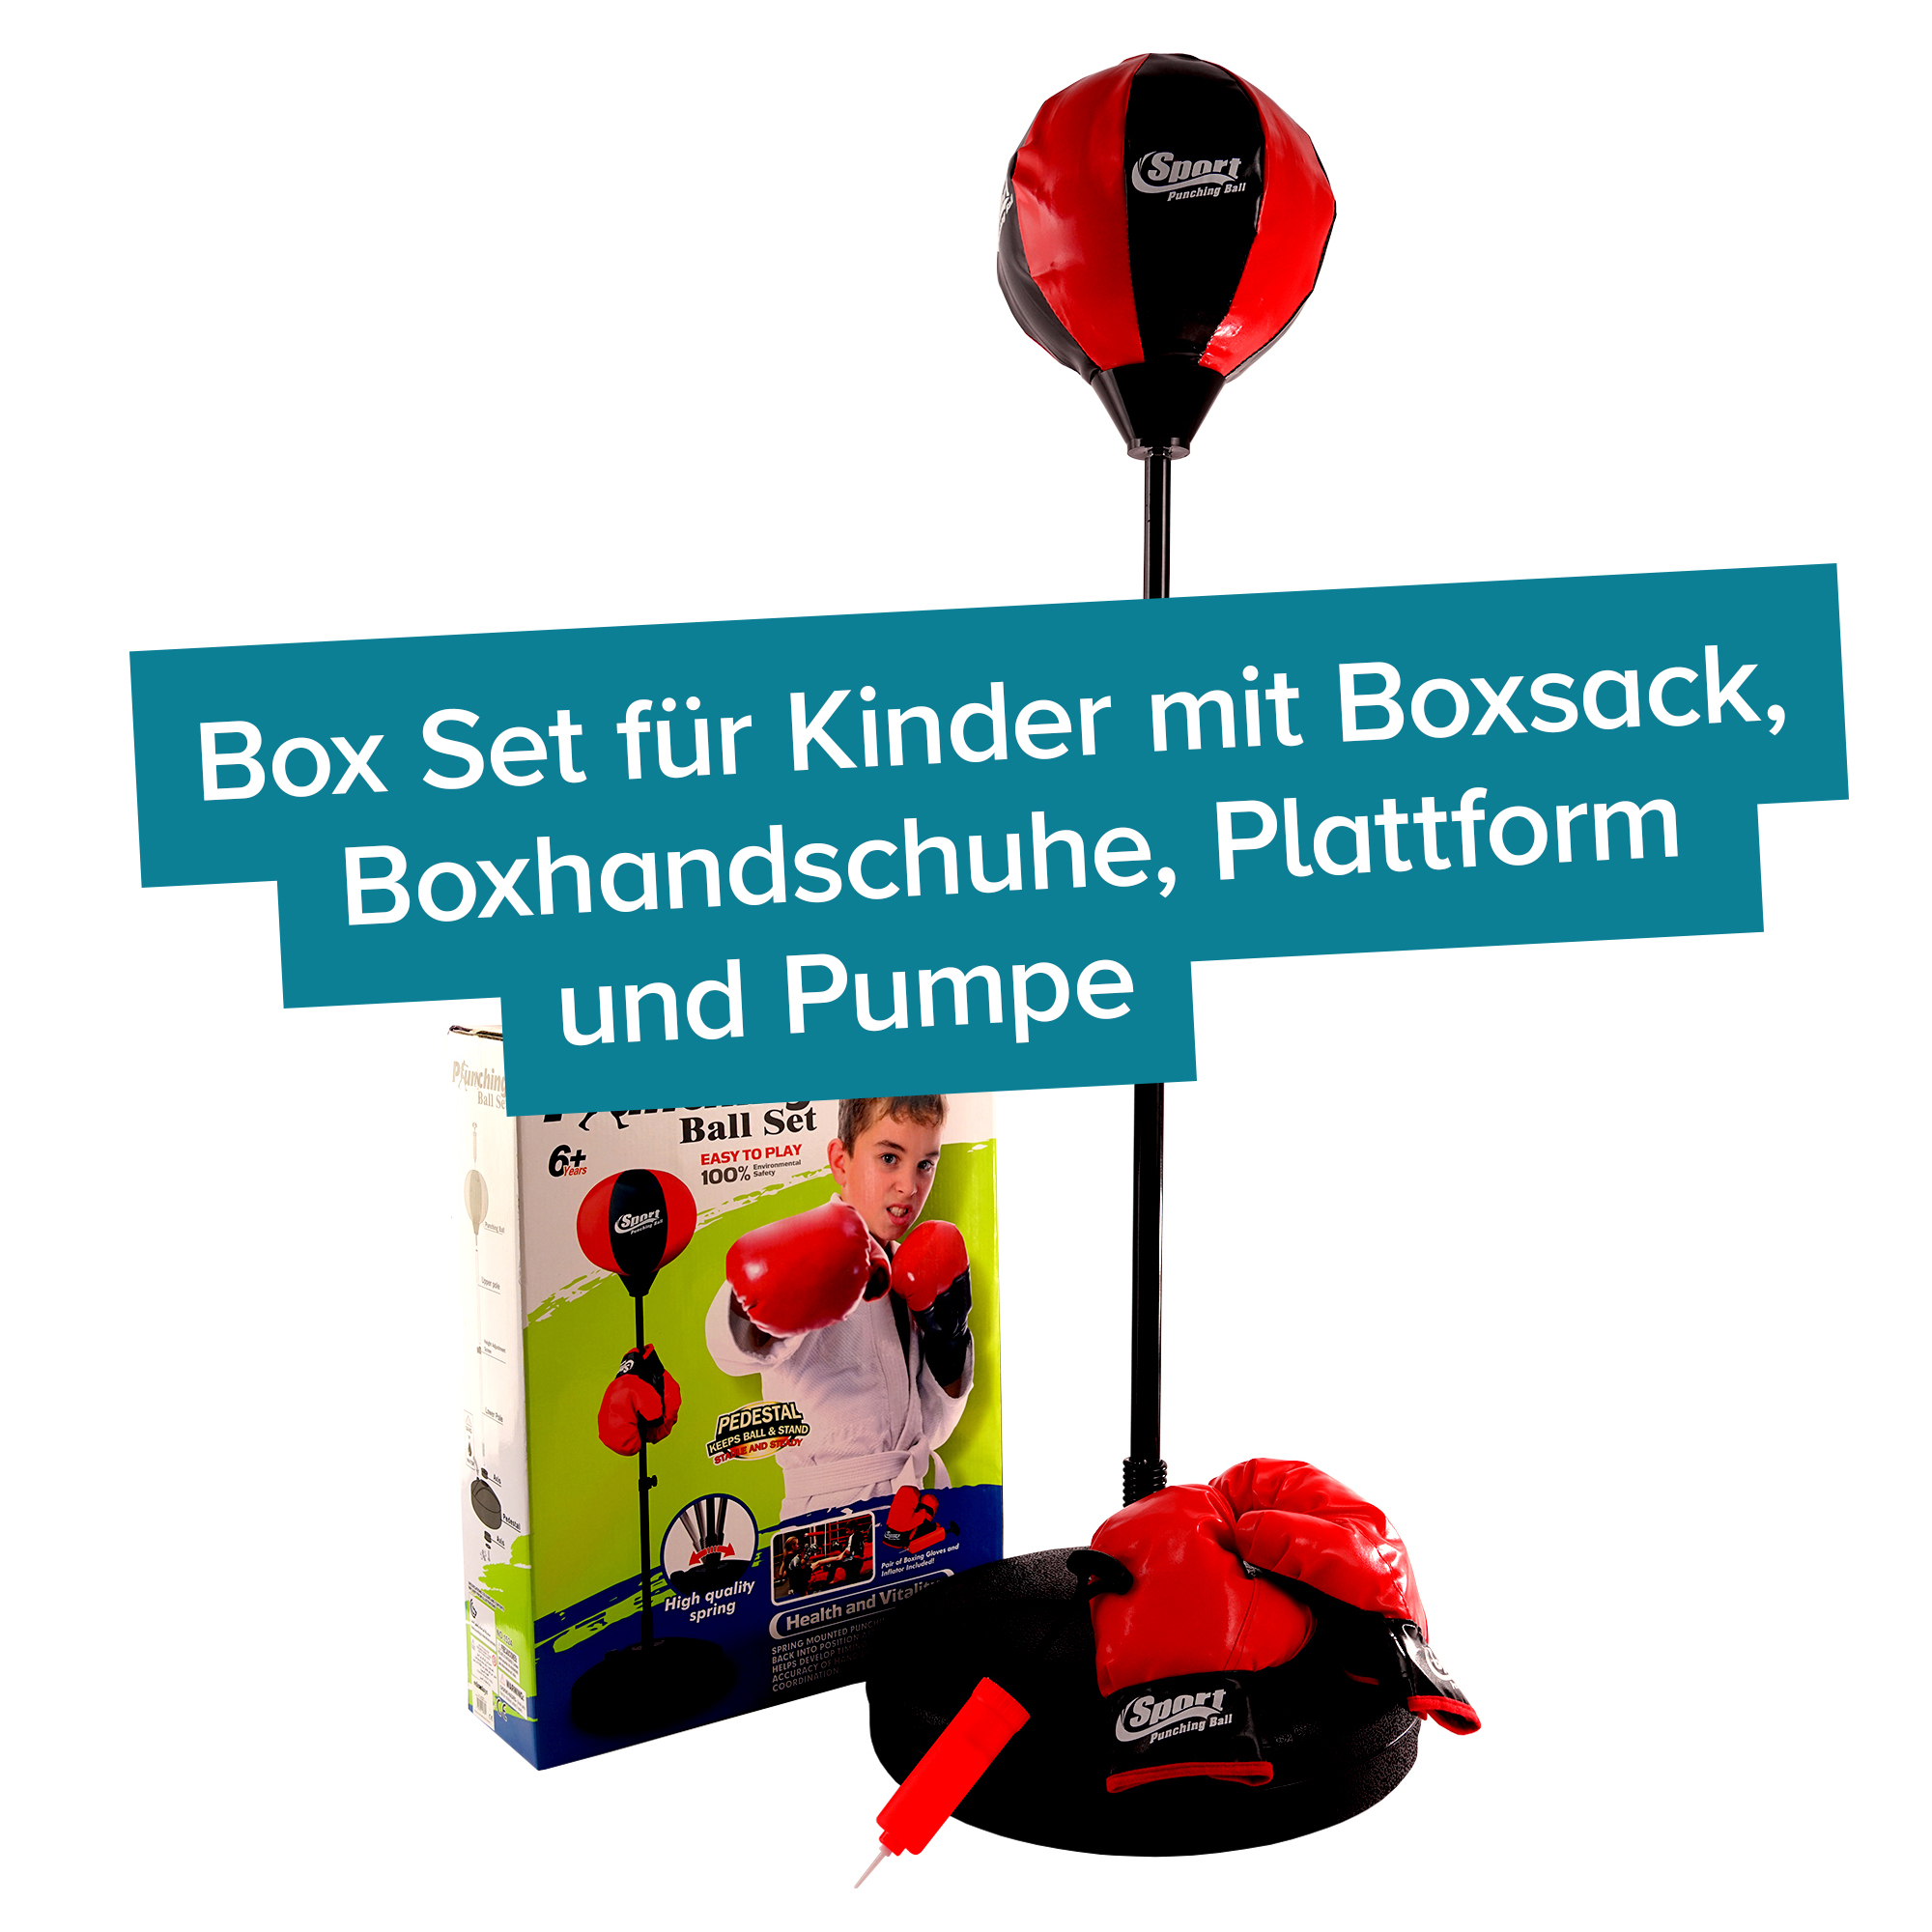 Boxsack für Kinder - Box Set mit Boxbirne & Handschuhen